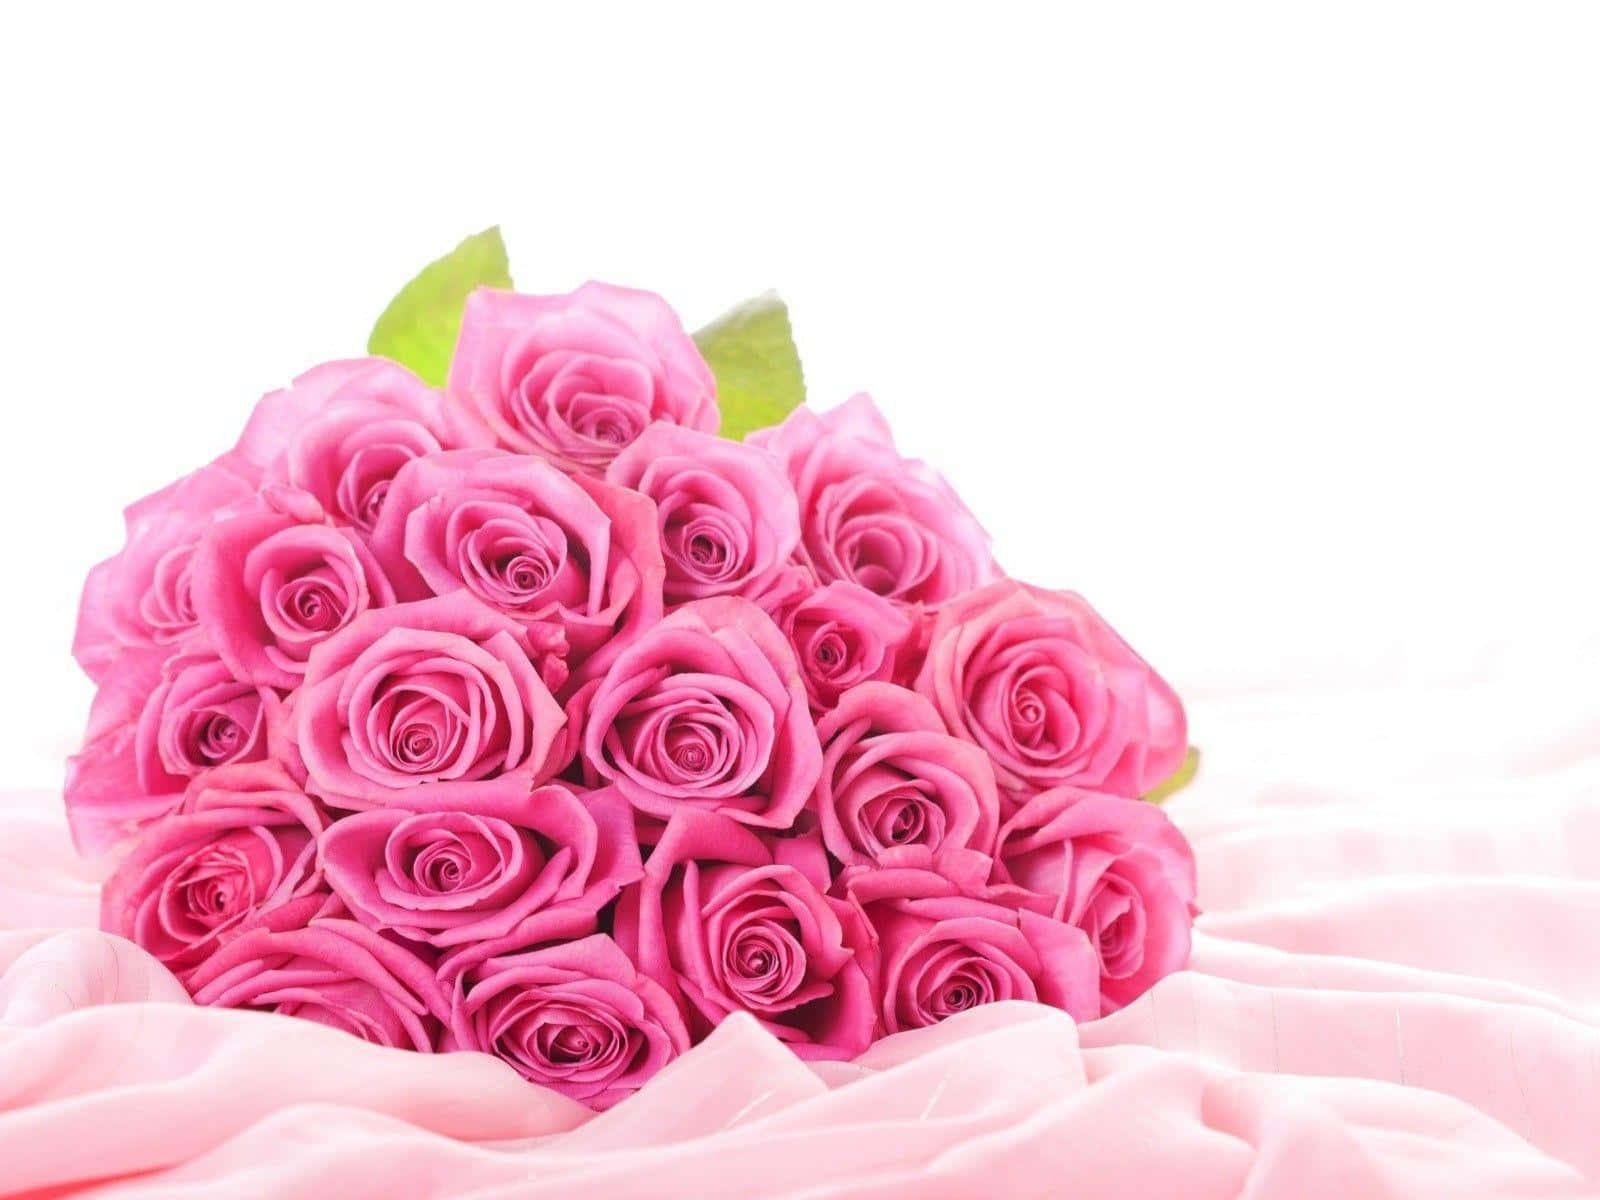 Ensmuk Pink Rose, Der Står I Fuldt Flor.